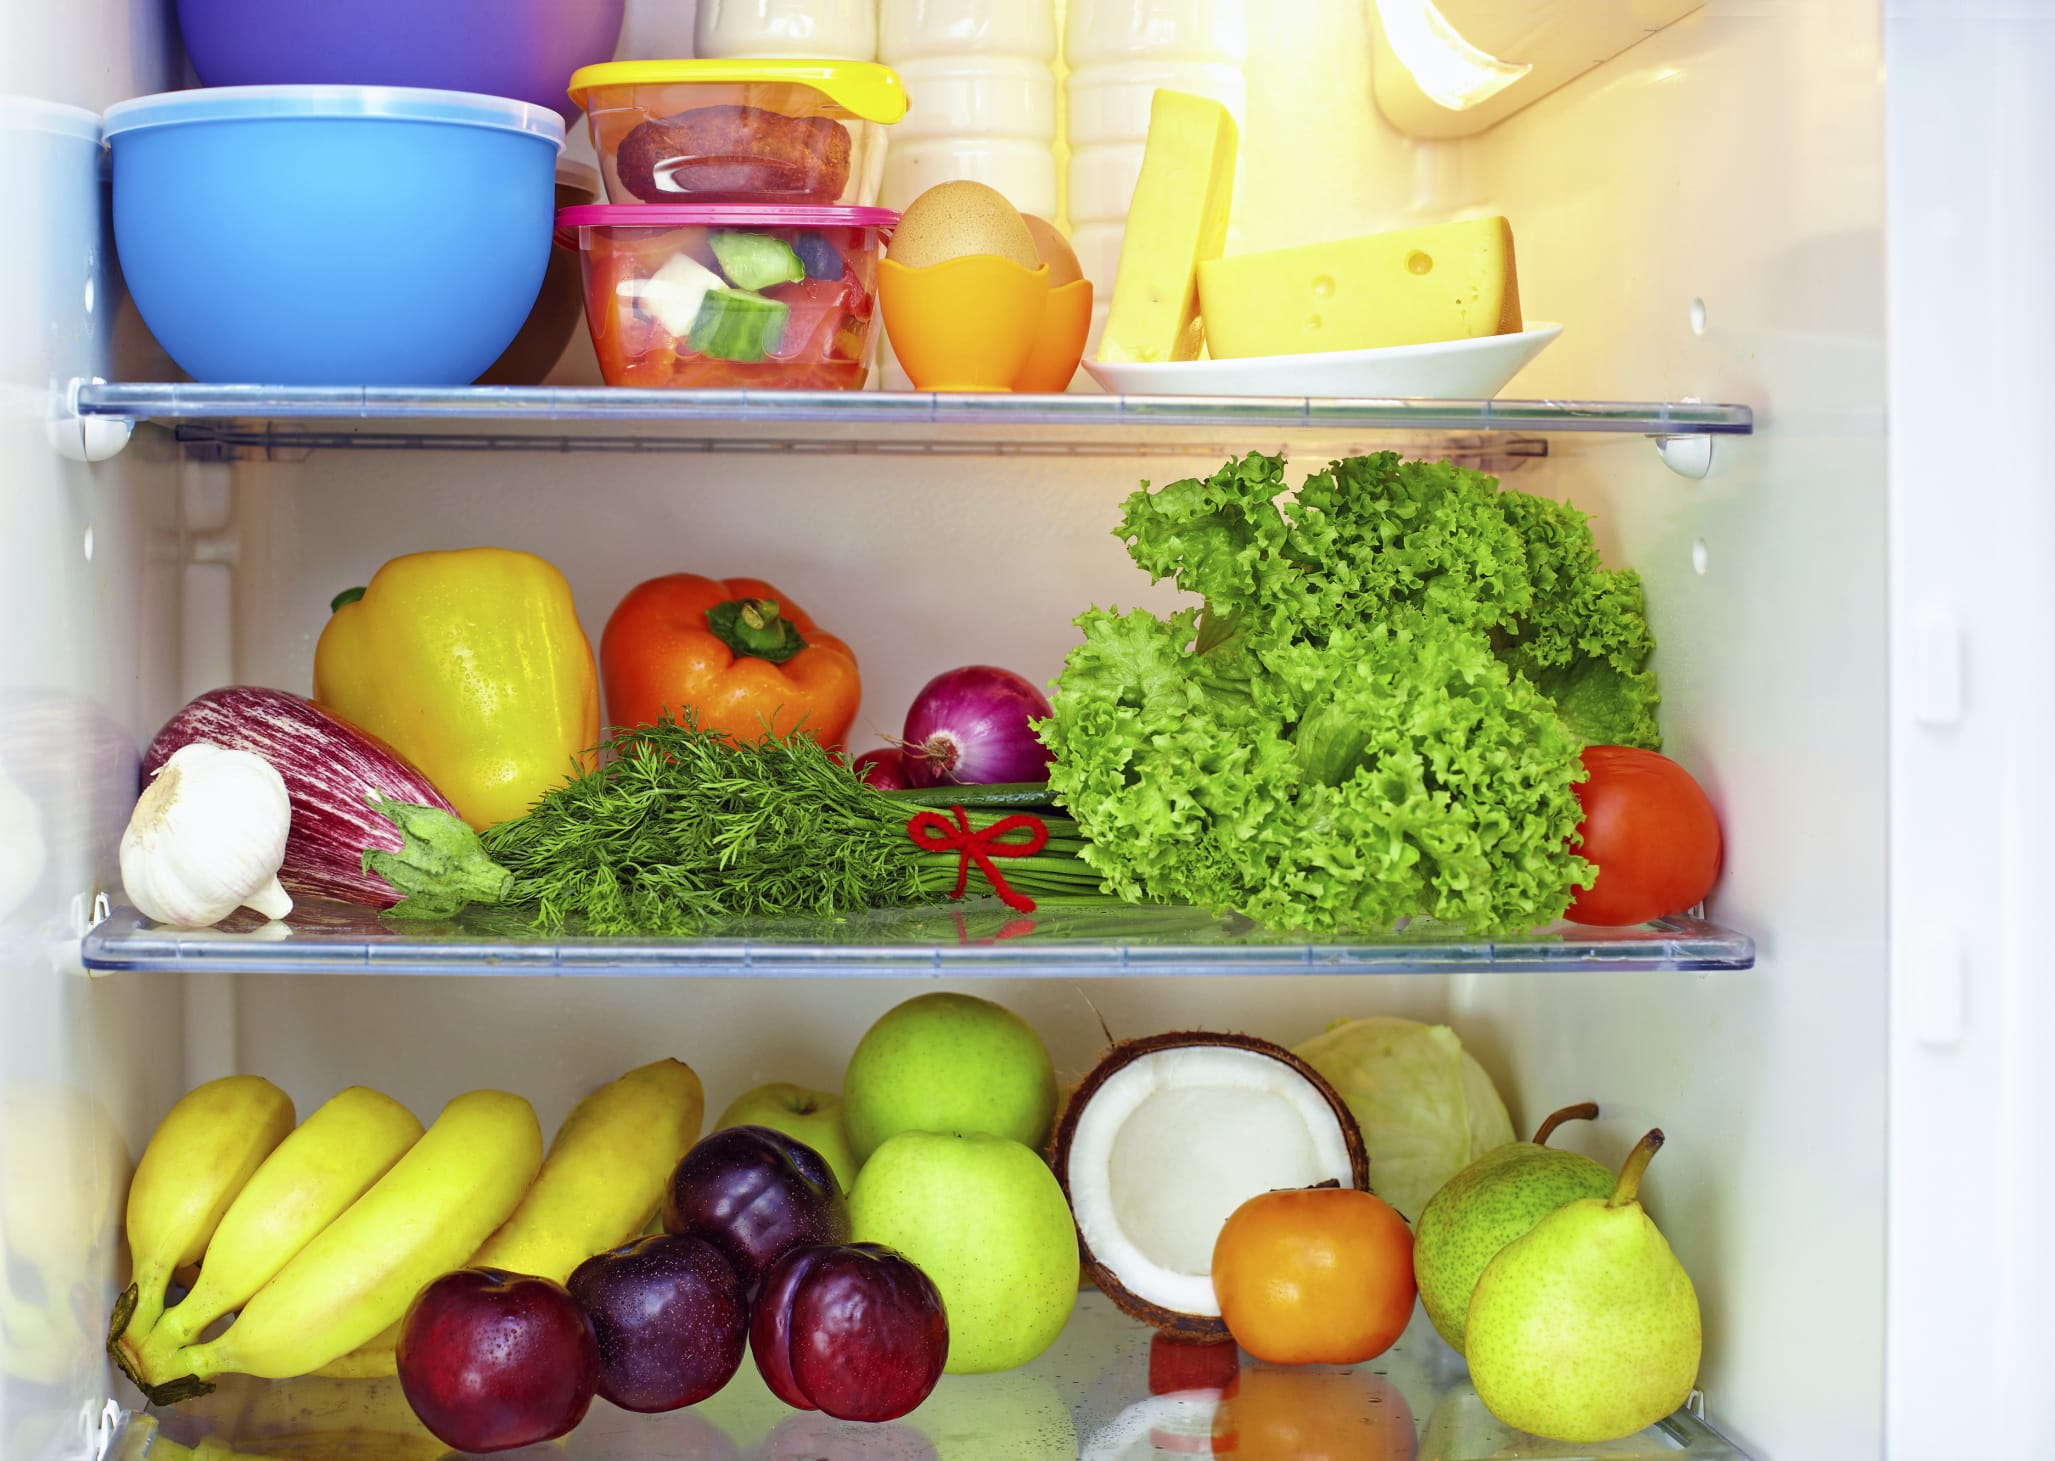 Come disporre gli alimenti in frigorifero